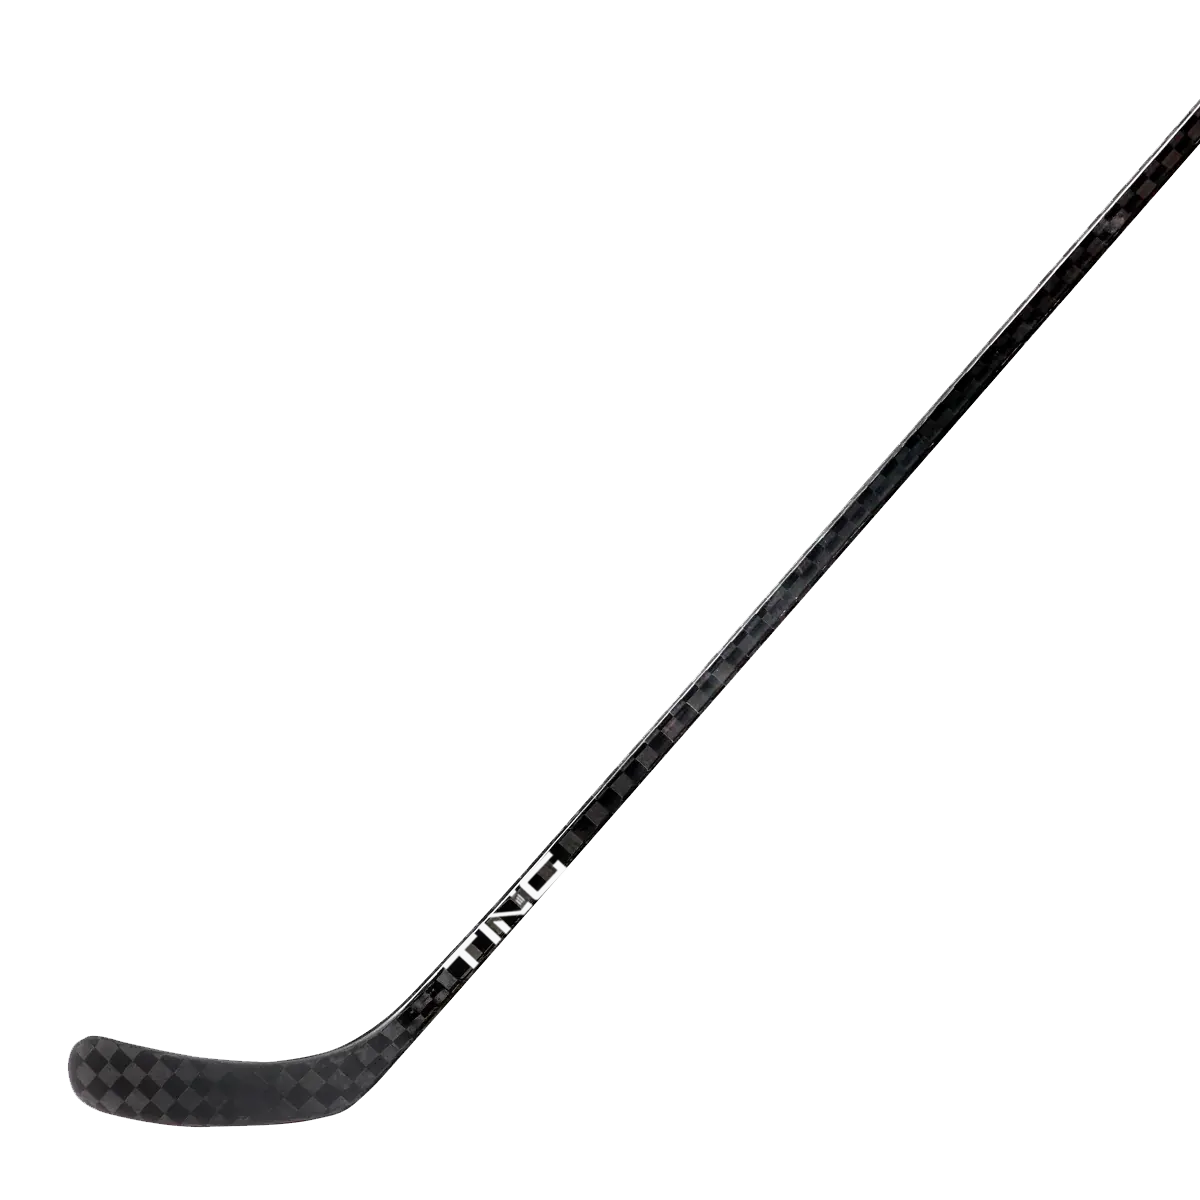 senior hockey stick product image